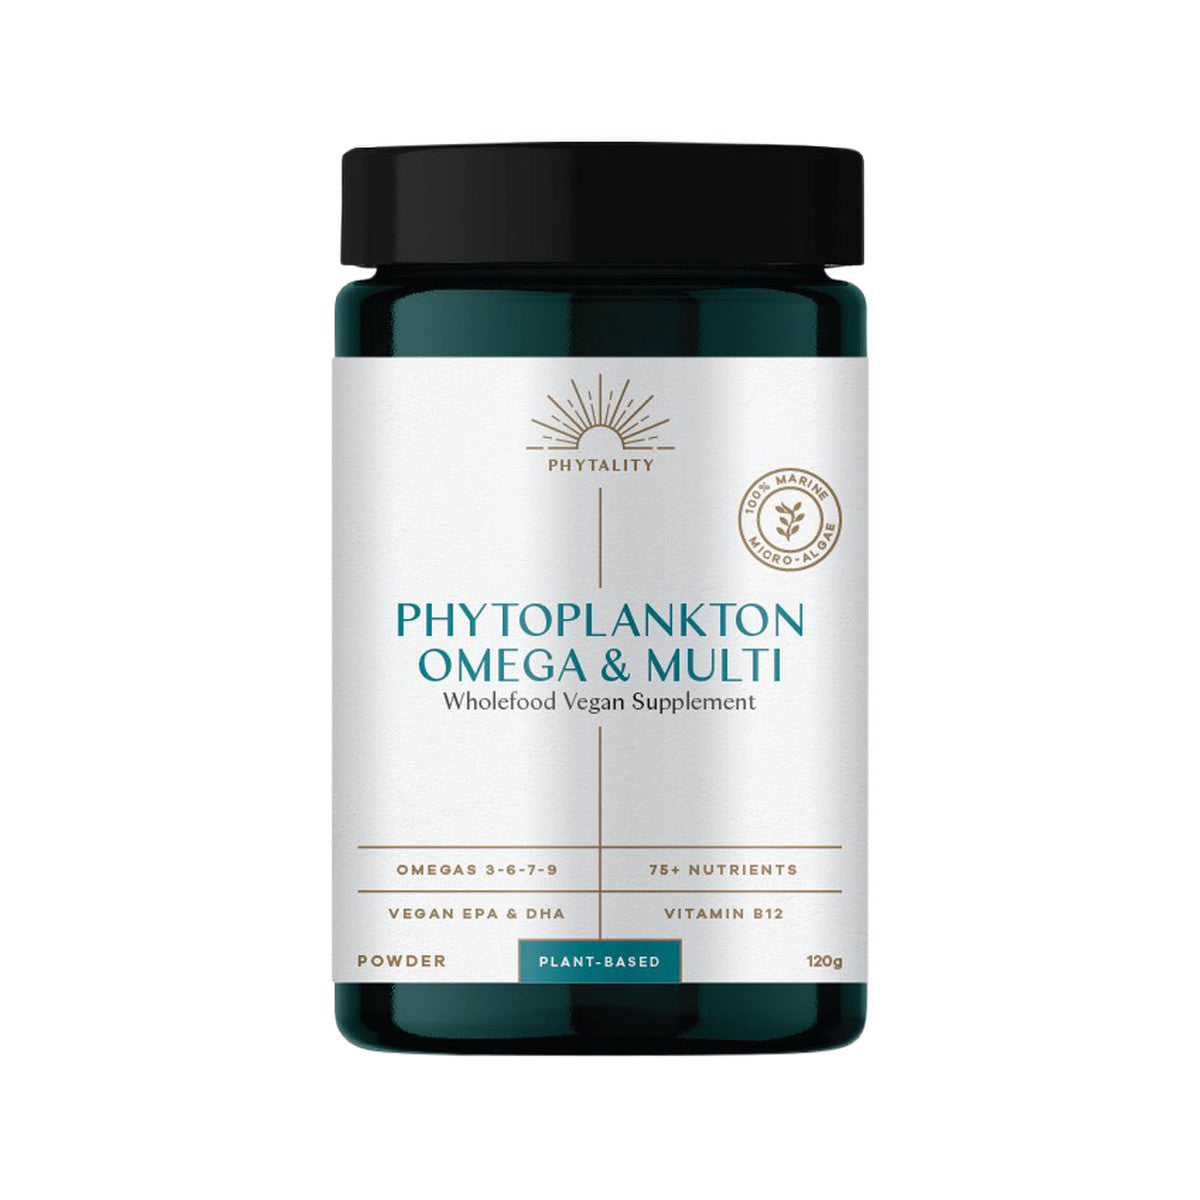 Phytality Phytoplankton Omega & Multi - Wholefood Vegan Supplement Powder 120g